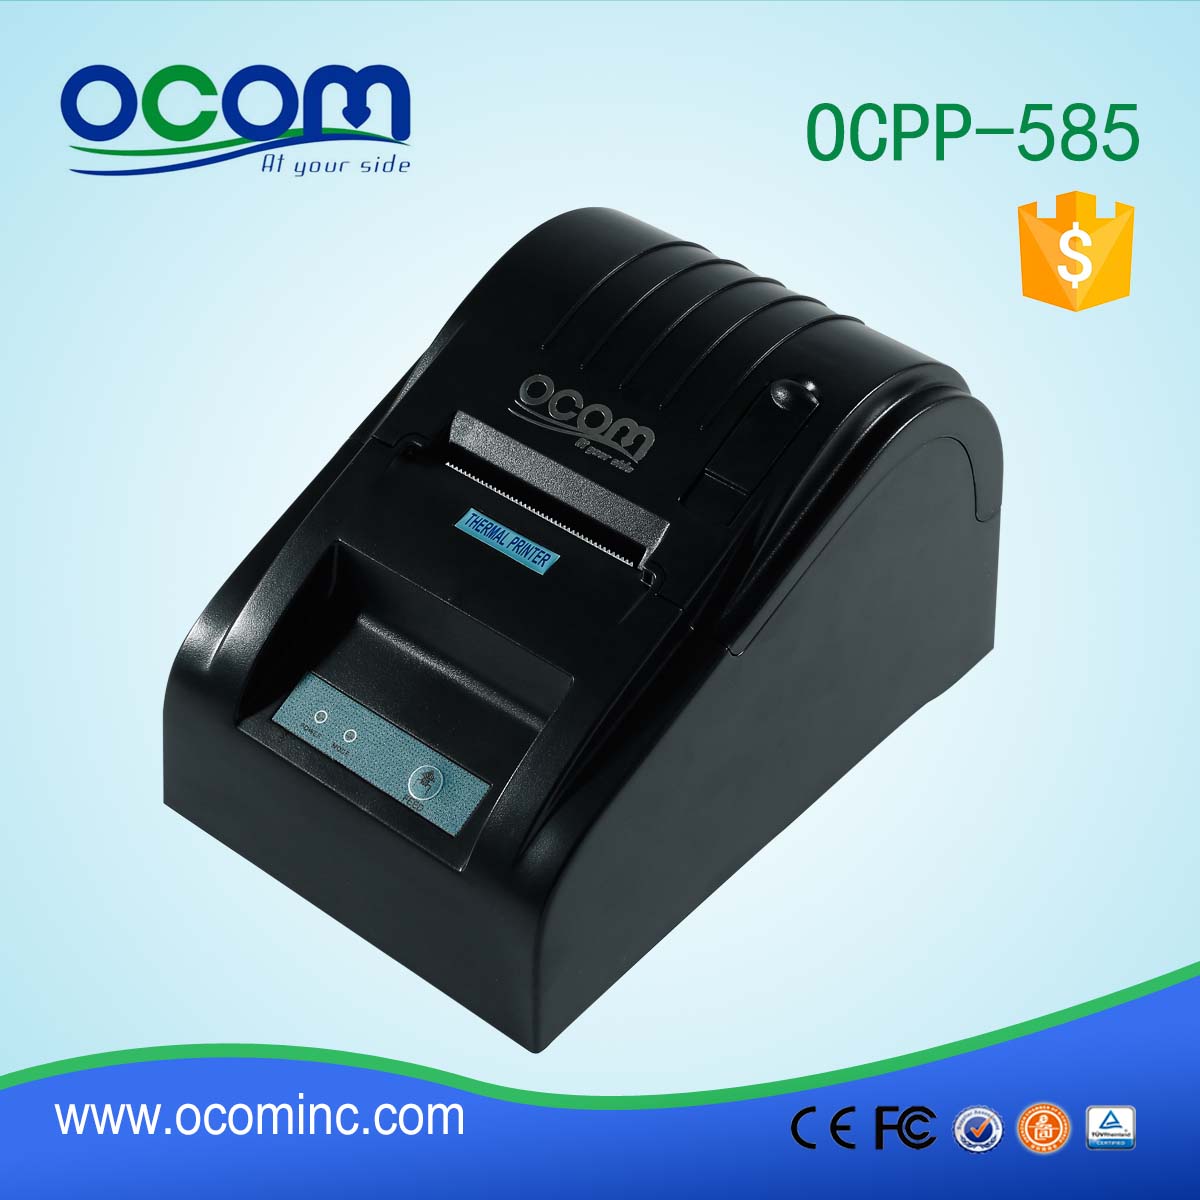 OCPP-586-L Impressora de recebimento térmico barata de 58mm LAN Port LAN